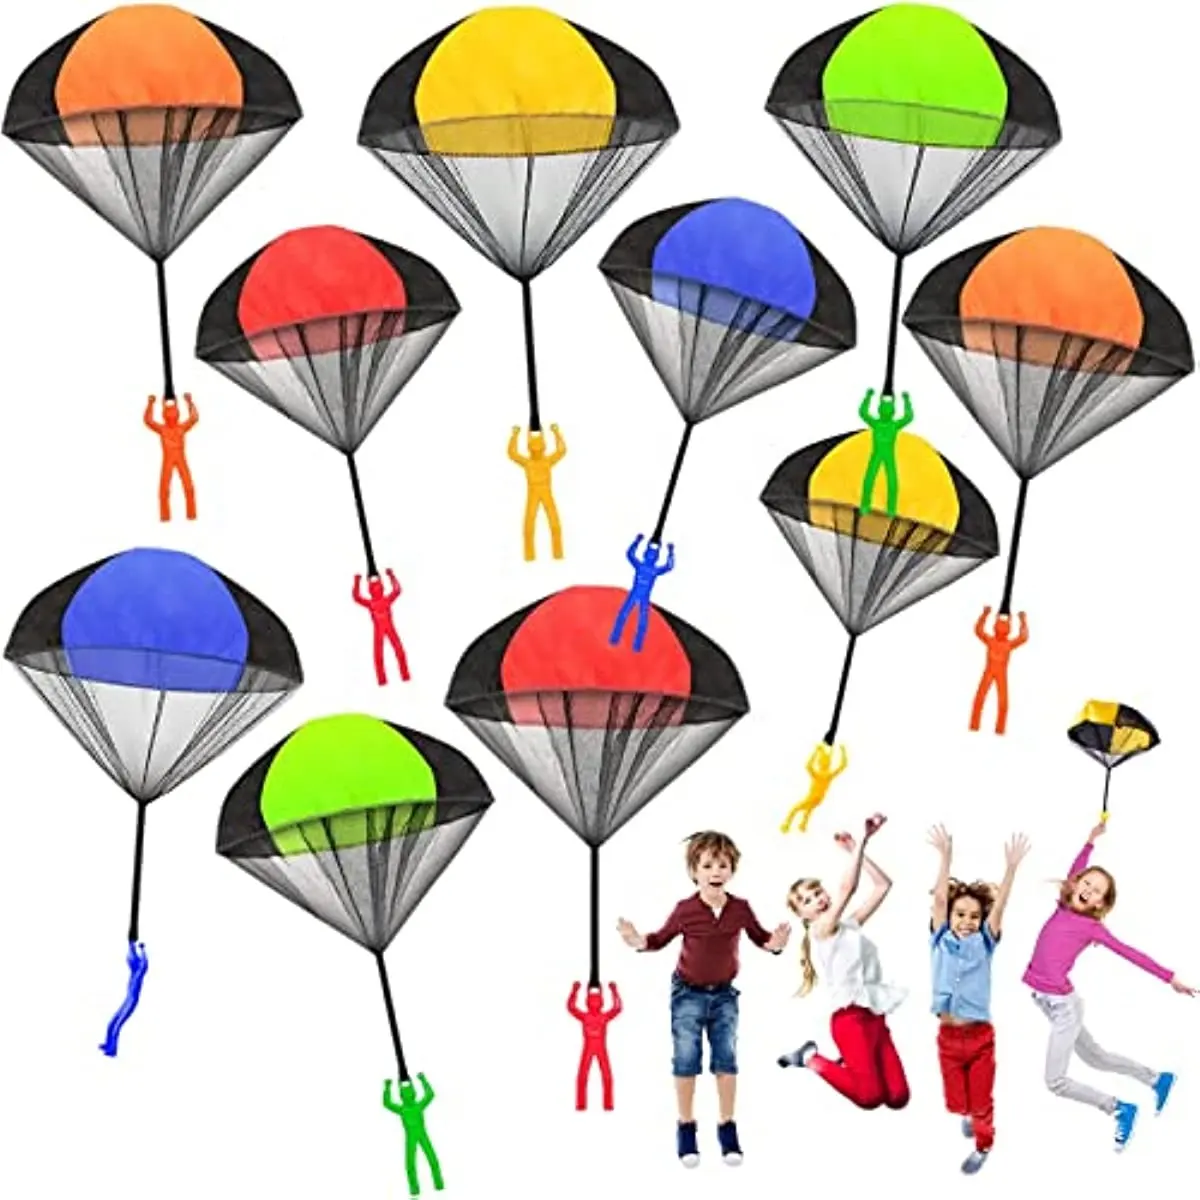 Niños mano lanzar paracaídas juguete al aire libre Juguetes Divertidos juego para niños volar paracaídas deporte juegos educativos con Mini soldado